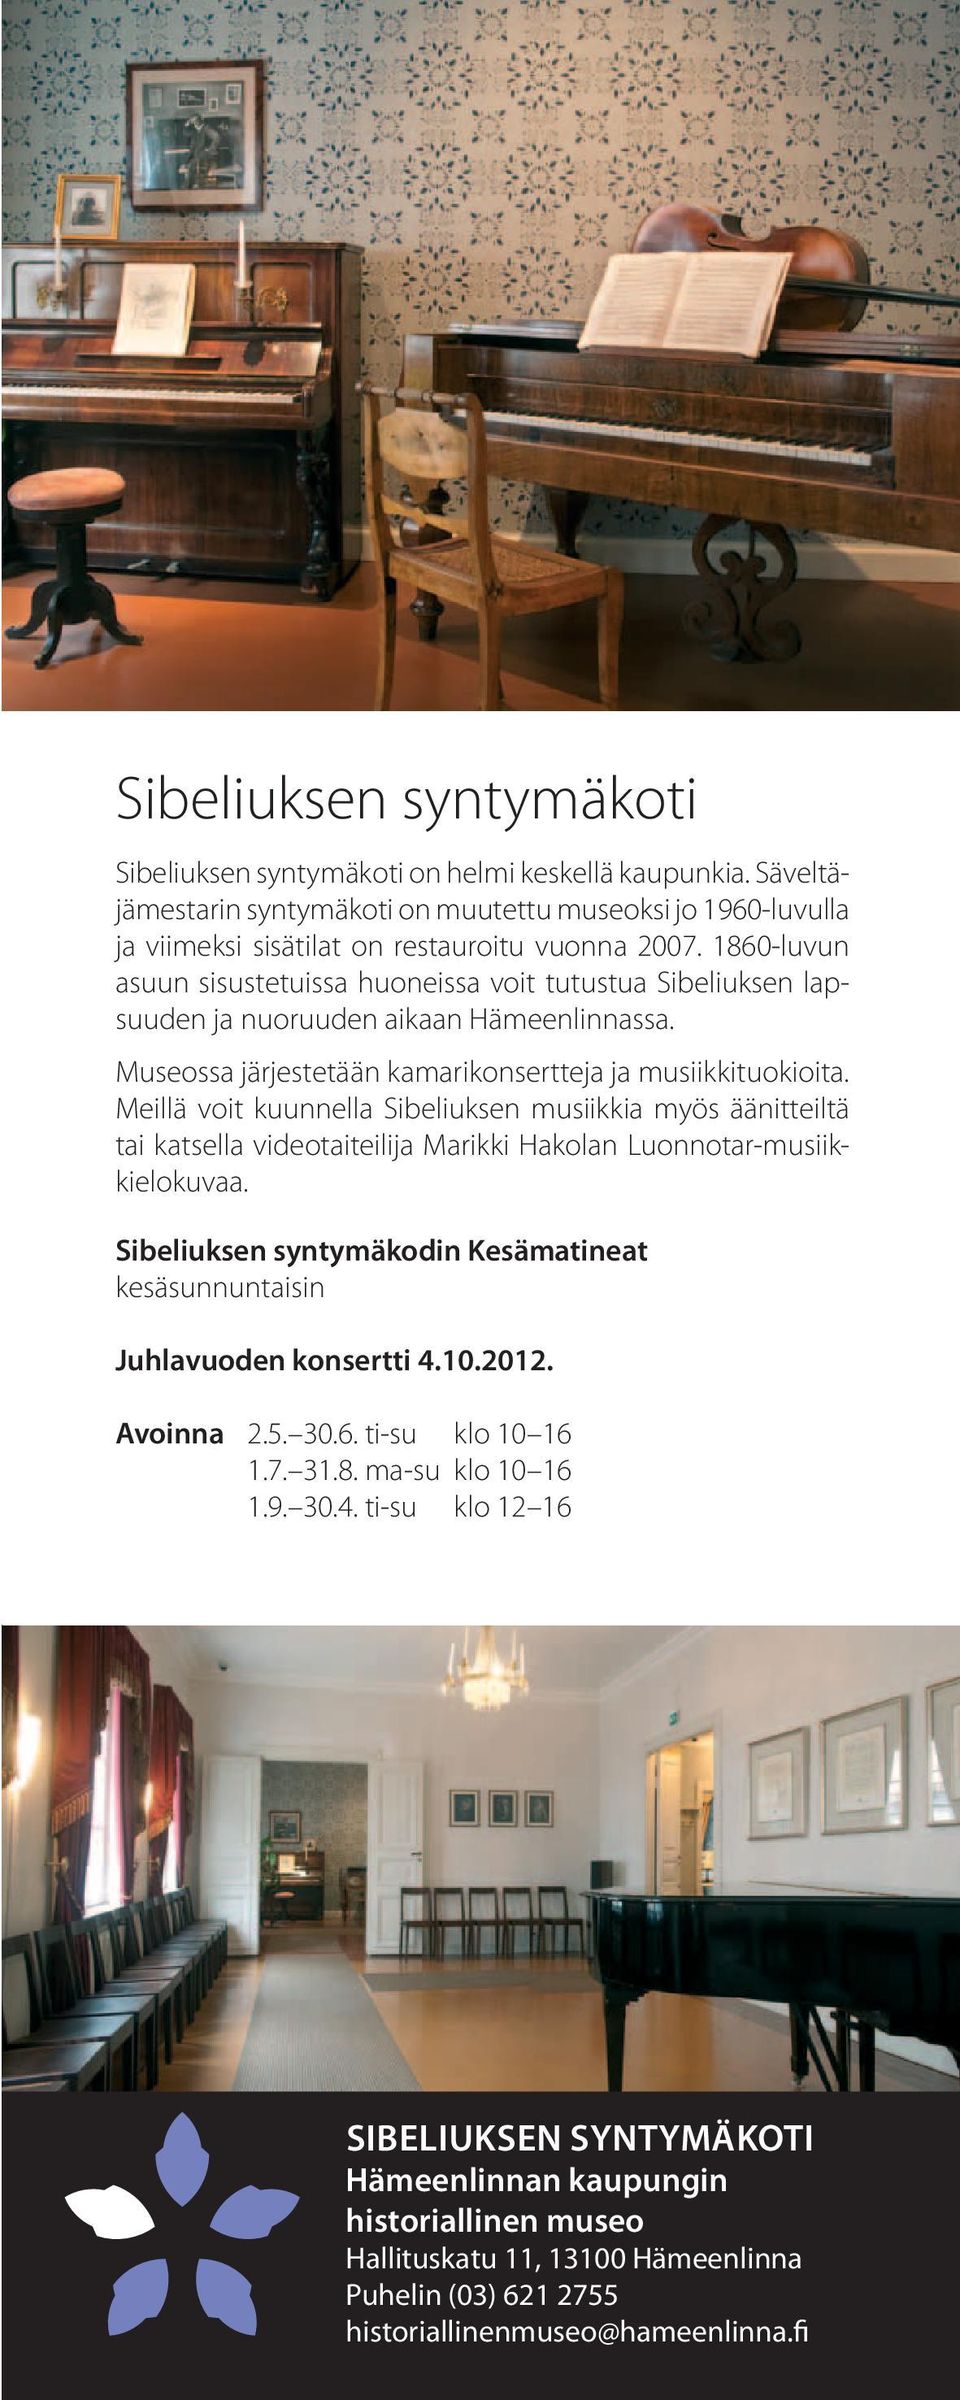 1860-luvun asuun sisustetuissa huoneissa voit tutustua Sibeliuksen lapsuuden ja nuoruuden aikaan Hämeenlinnassa. Museossa järjestetään kamarikonsertteja ja musiikkituokioita.